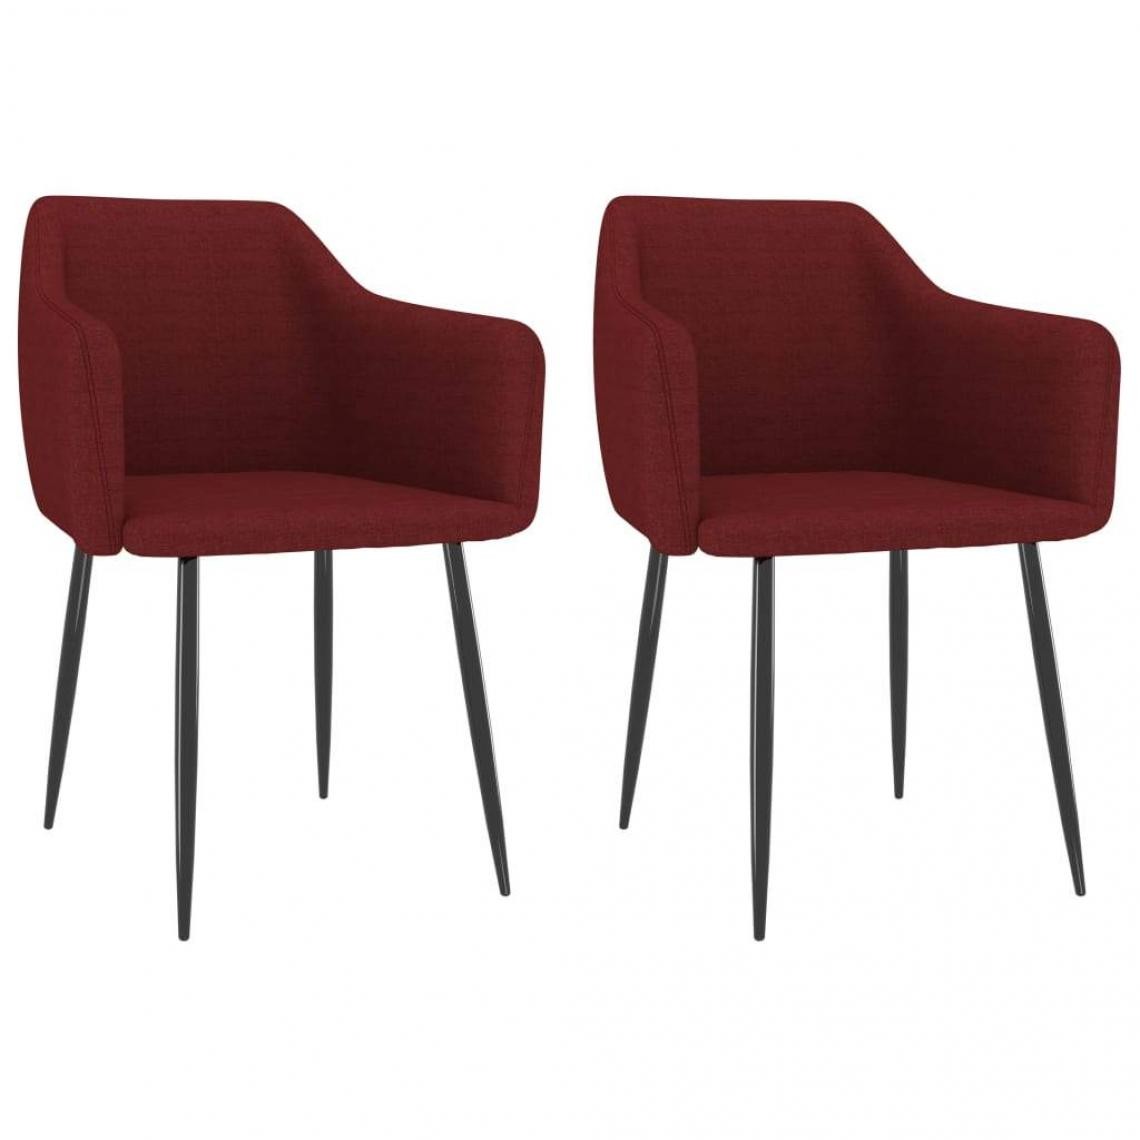 Decoshop26 - Lot de 2 chaises de salle à manger cuisine design moderne tissu rouge bordeaux CDS021001 - Chaises